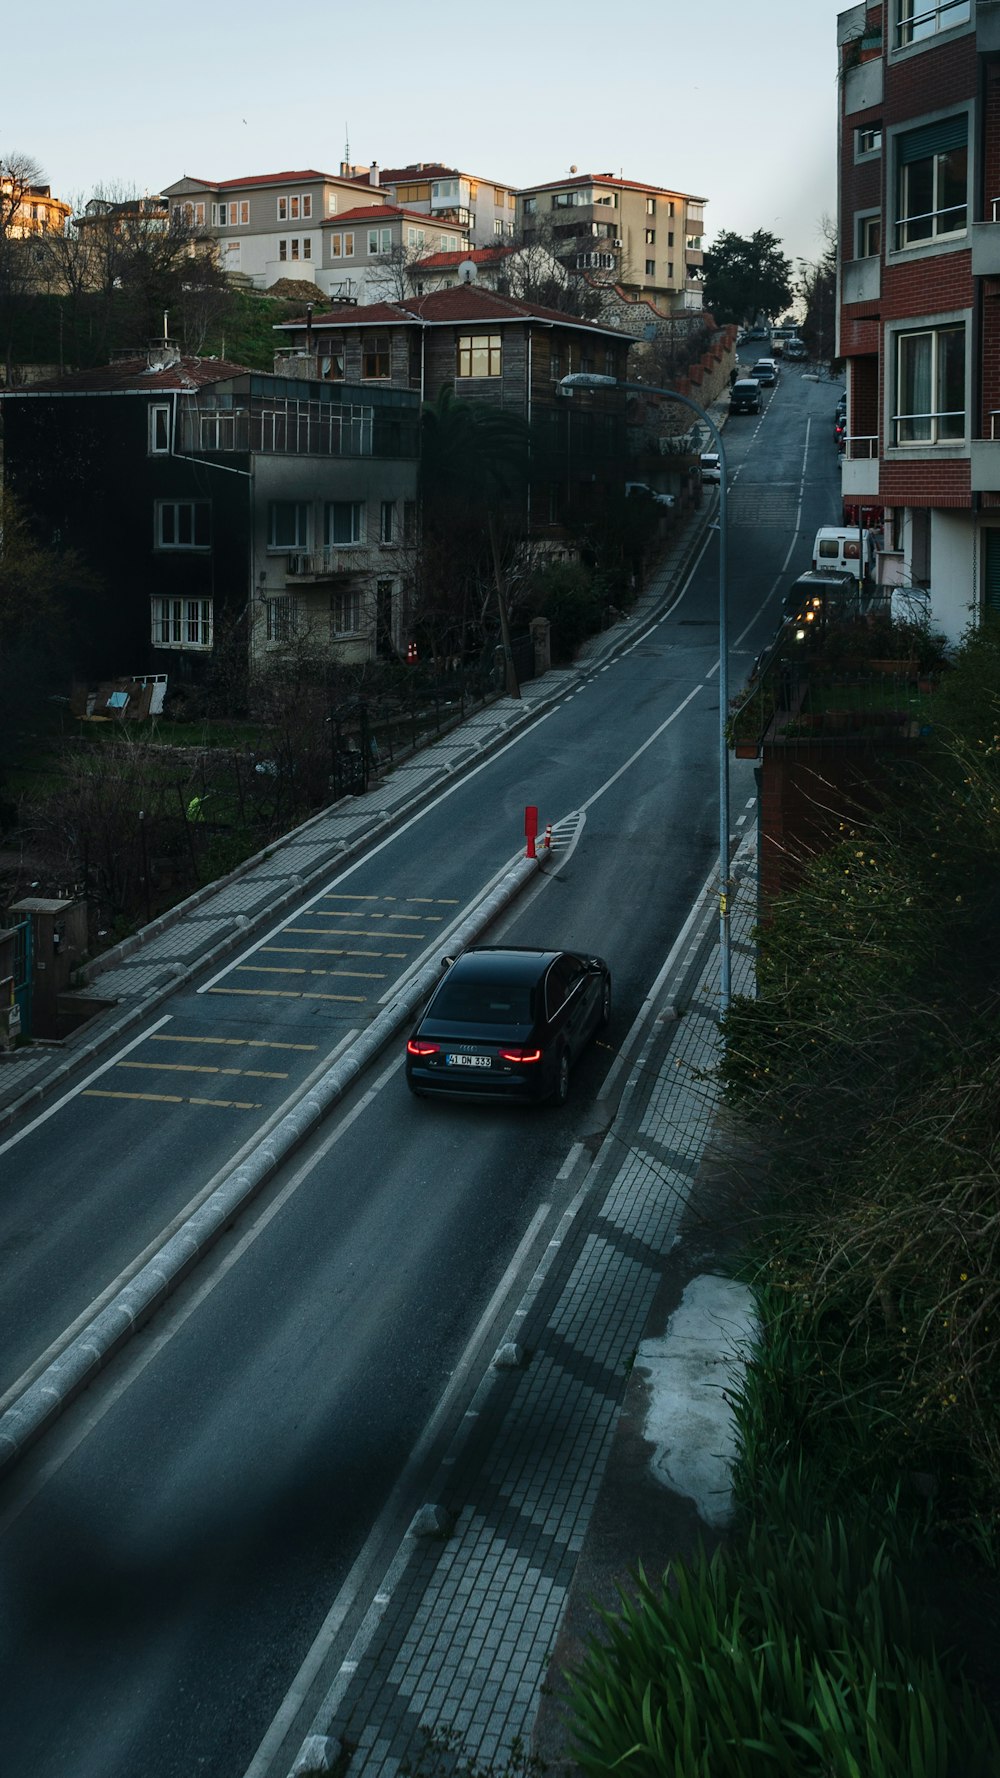 a car driving down a road